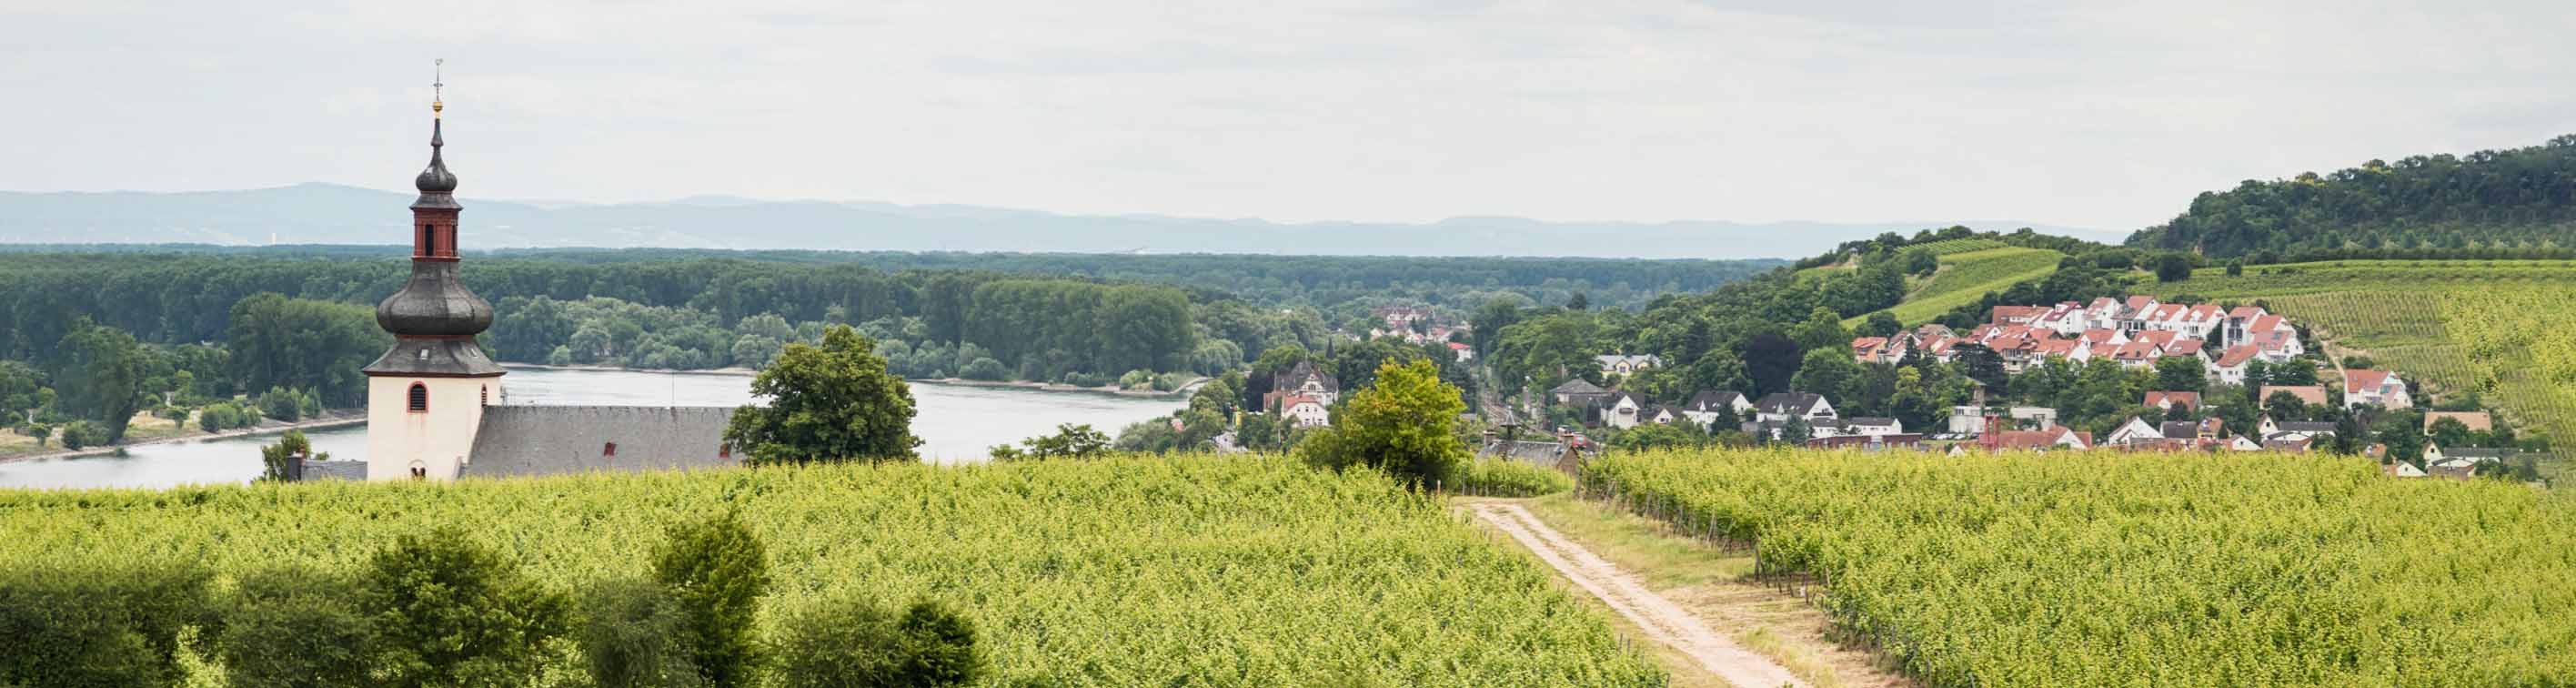 In welchem Bundesland liegt das Weinbaugebiet Rheinhessen?